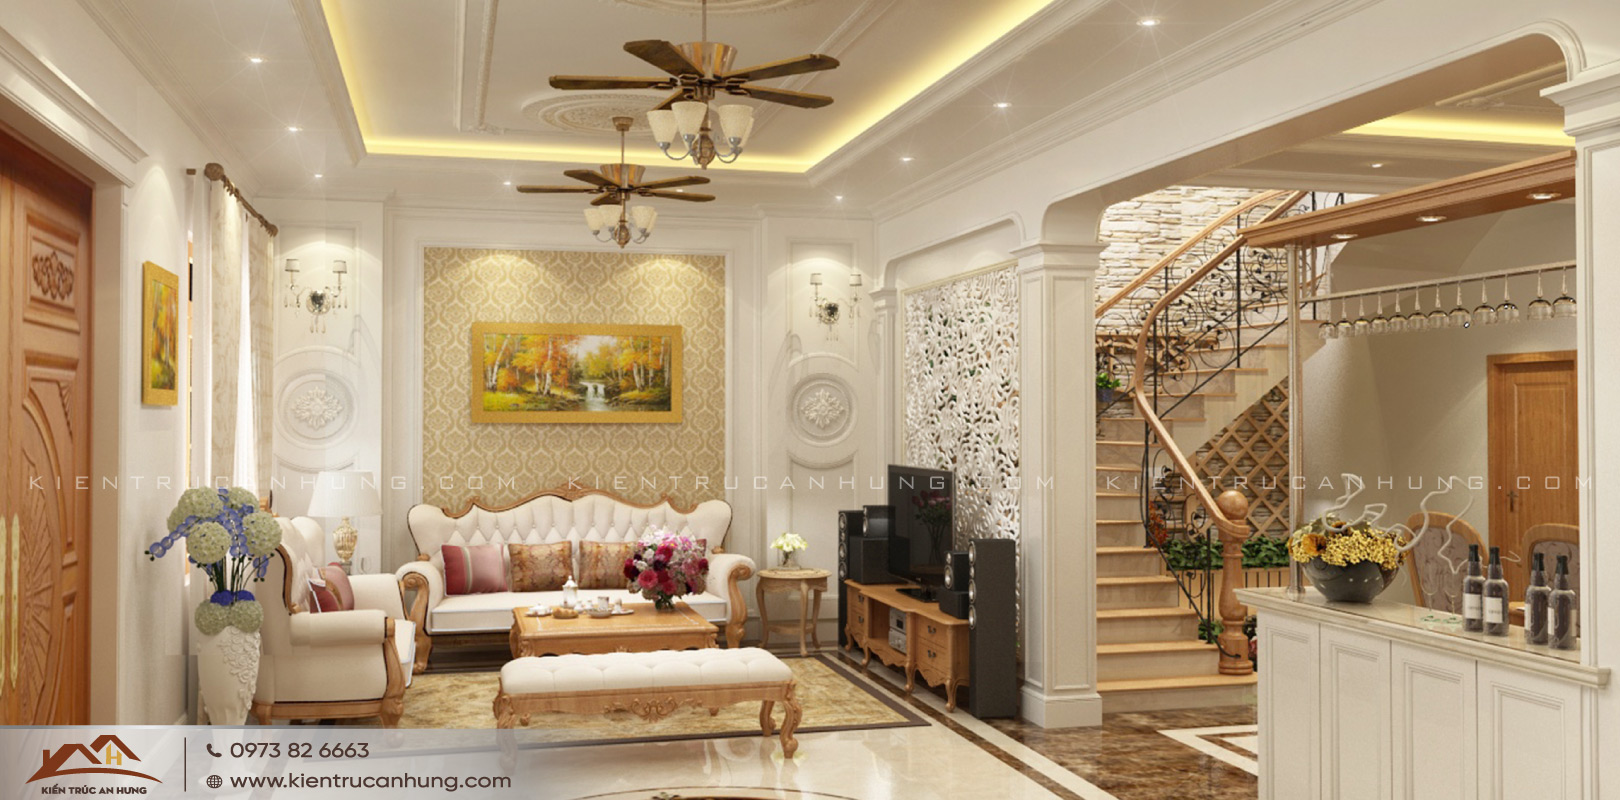 Thiết kế giếng trời phía trên cầu thang giúp đón ánh sáng phía trên vào không gian nội thất bên trong nhà